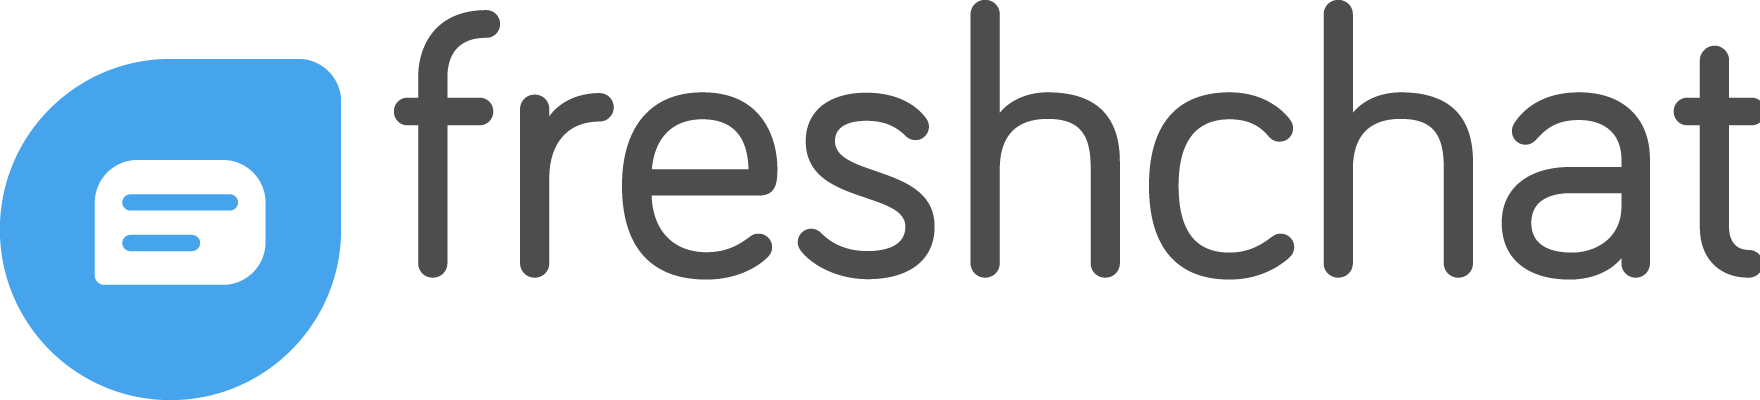 freshchat-logo